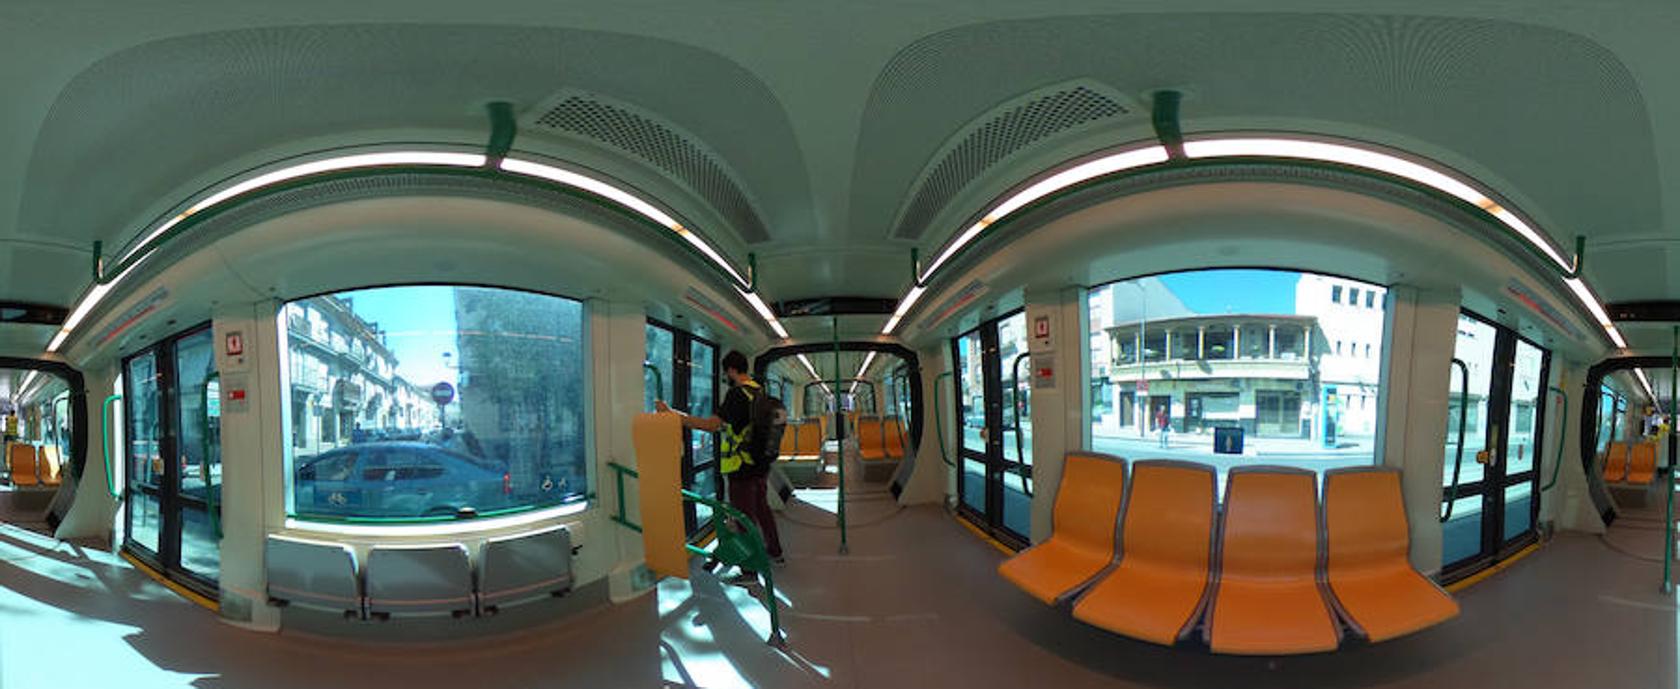 Pasea por el metro de Granada en 360º